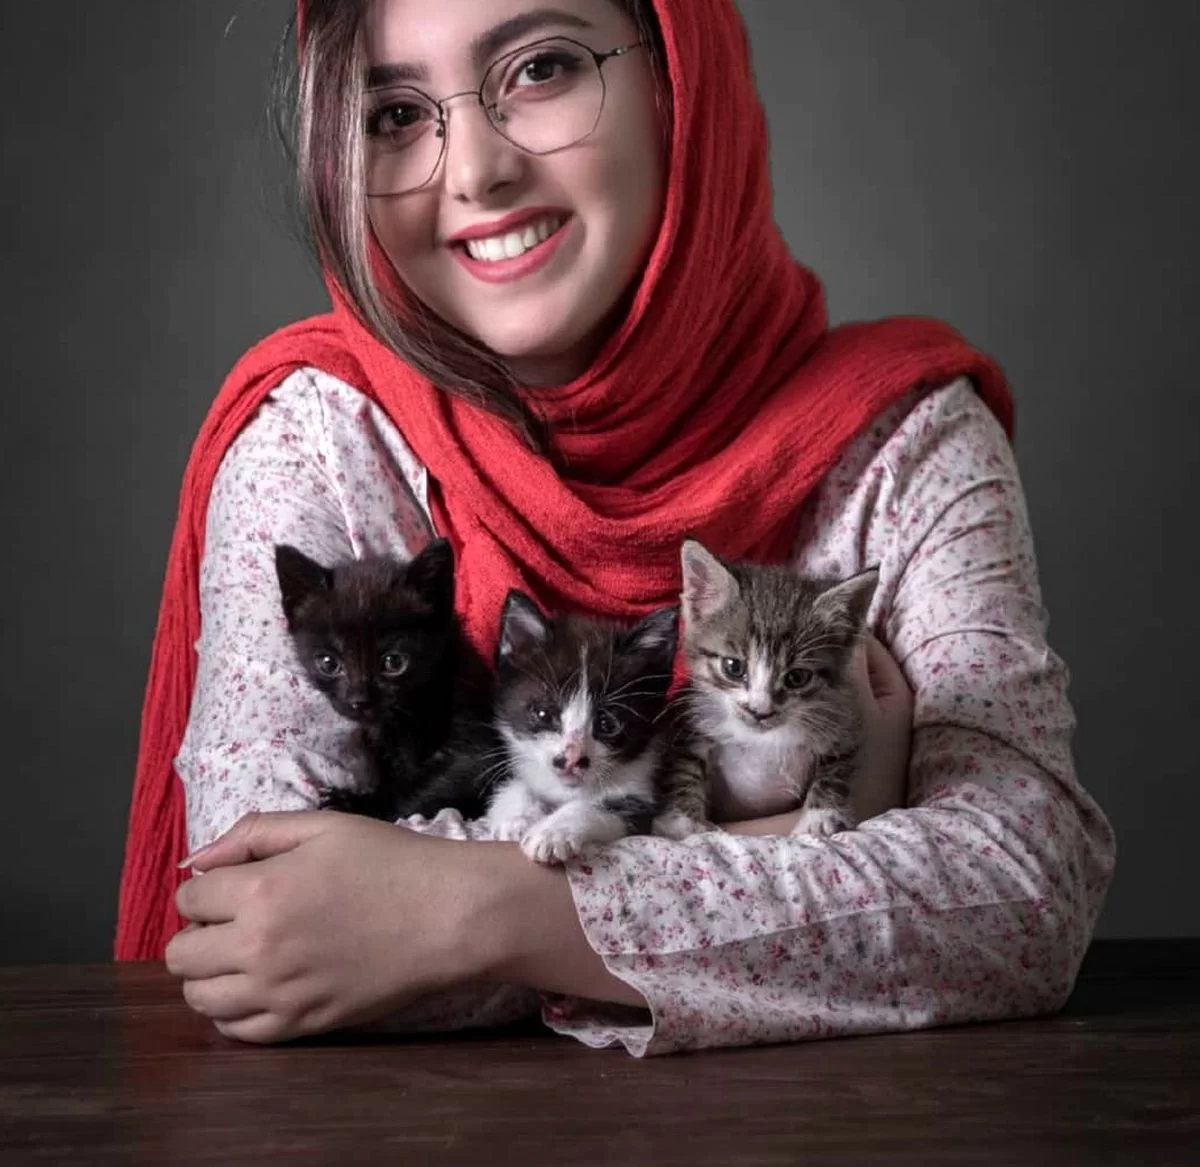 عکس زیبا کرمعلی درحالی که سه بچه گربه را در آغوش کشیده که نشان از عشق بیش از حد او نسبت به آنها دارد مورد توجه مخاطبین قرار گرفته است.